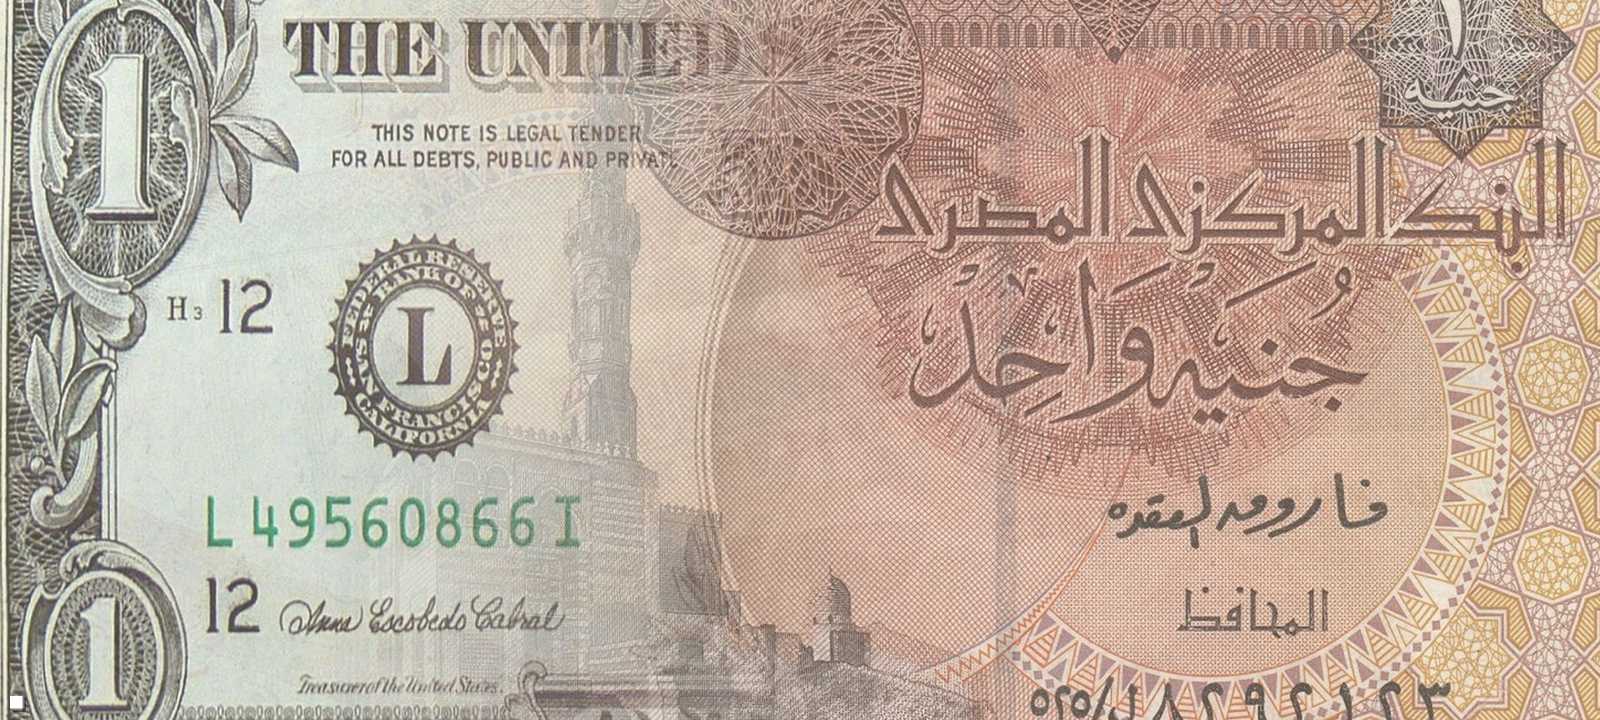 الجنيه المصري مقابل الدولار